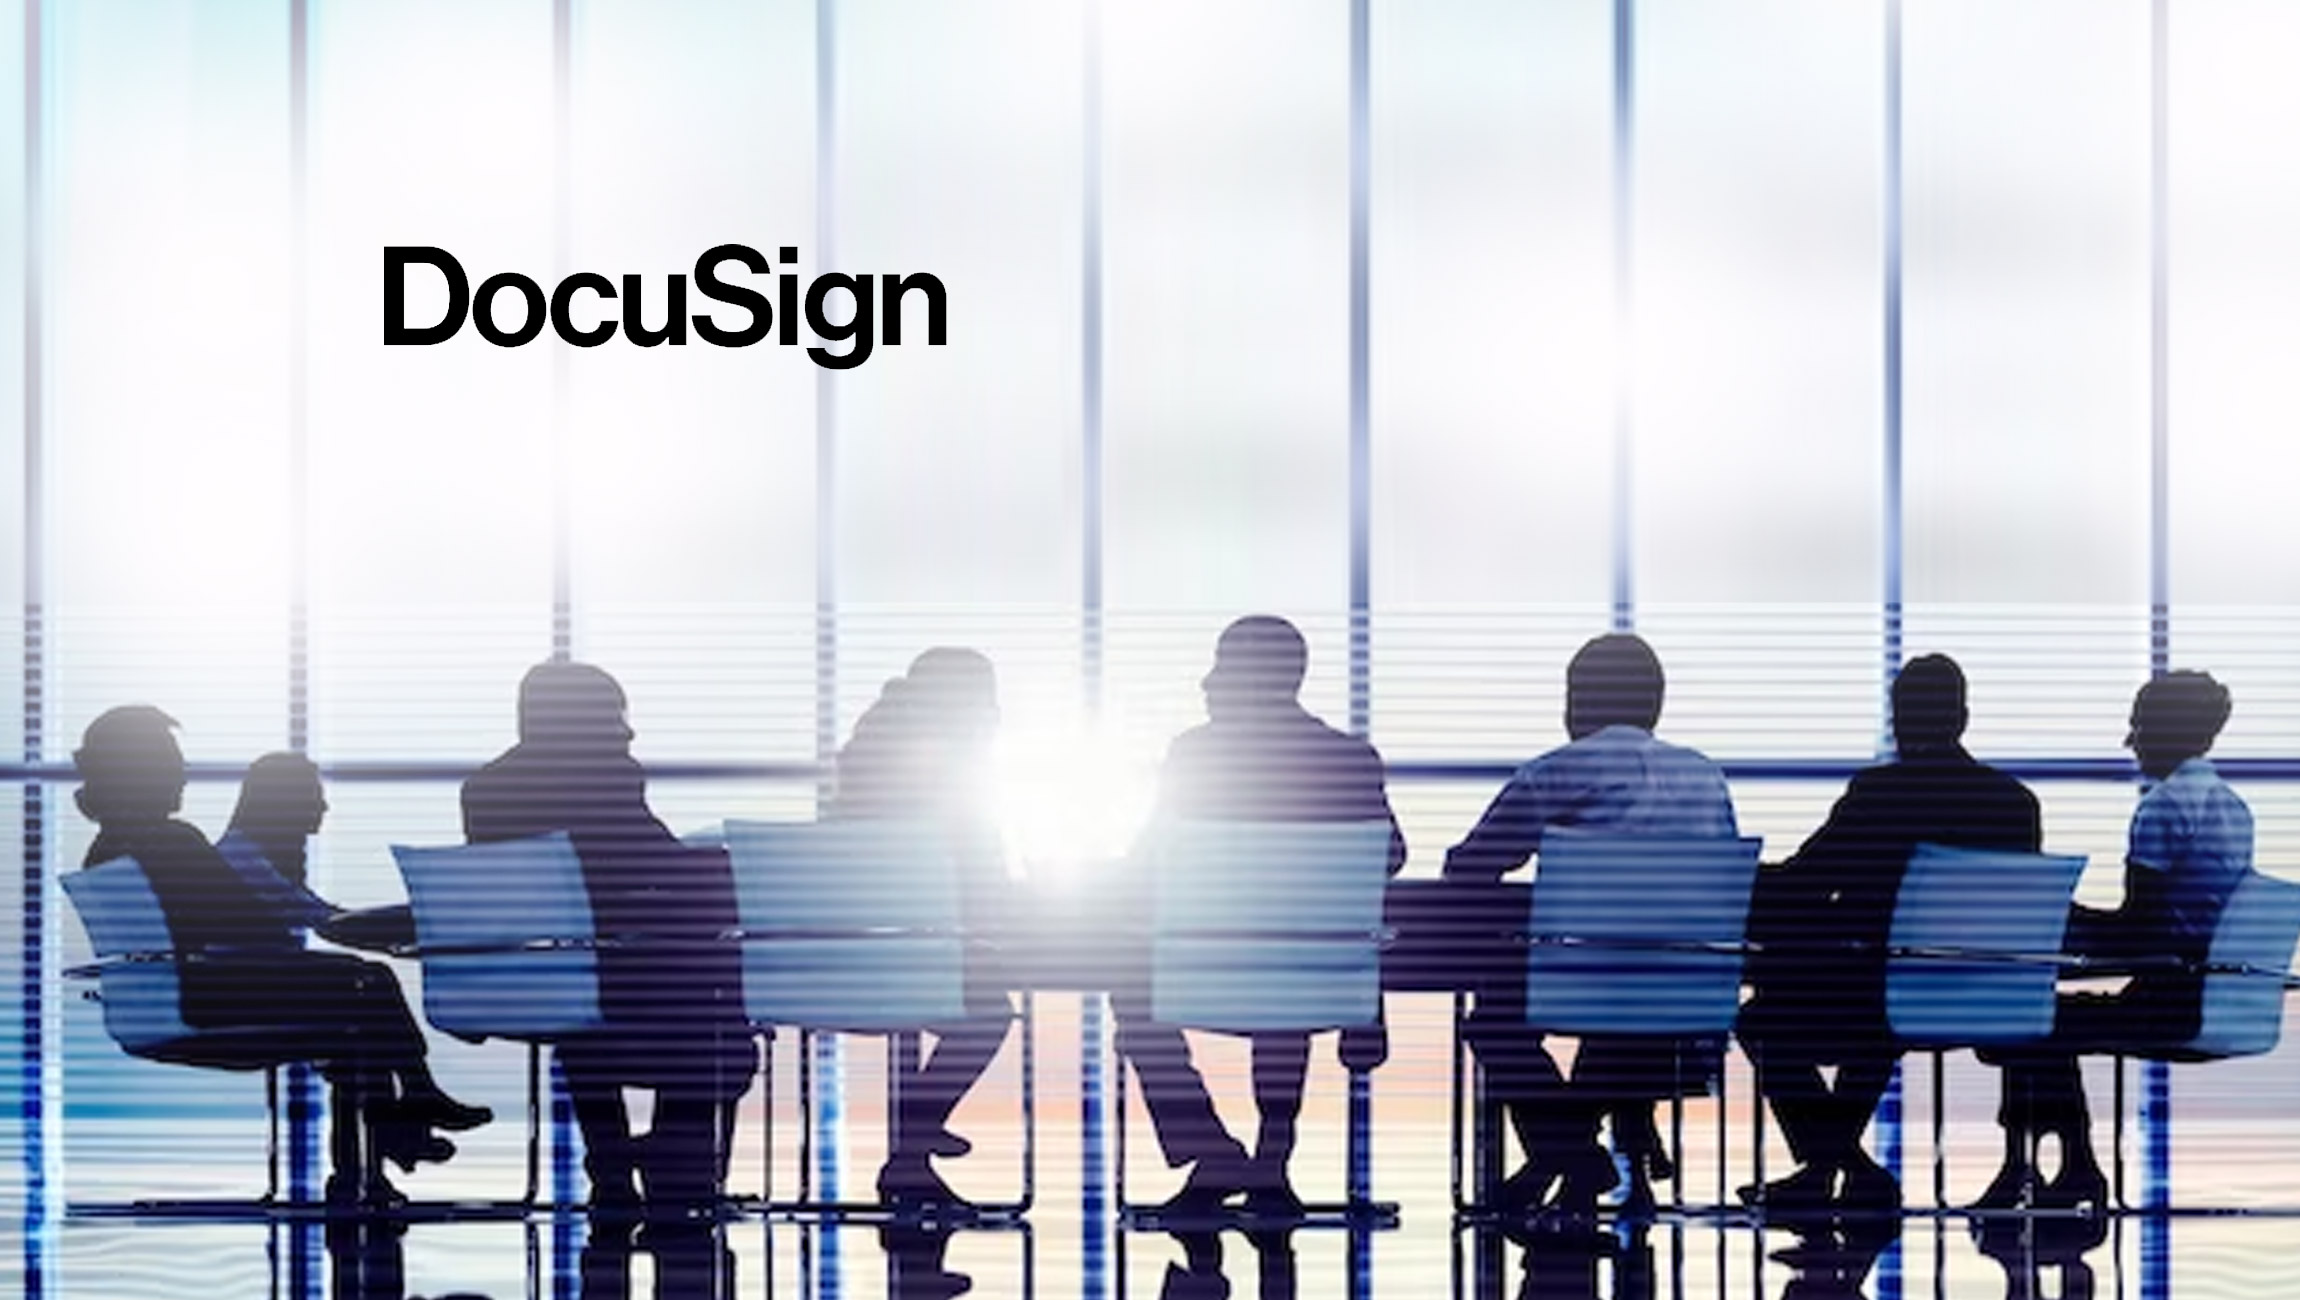 DocuSign Announces CFO Transition Plan